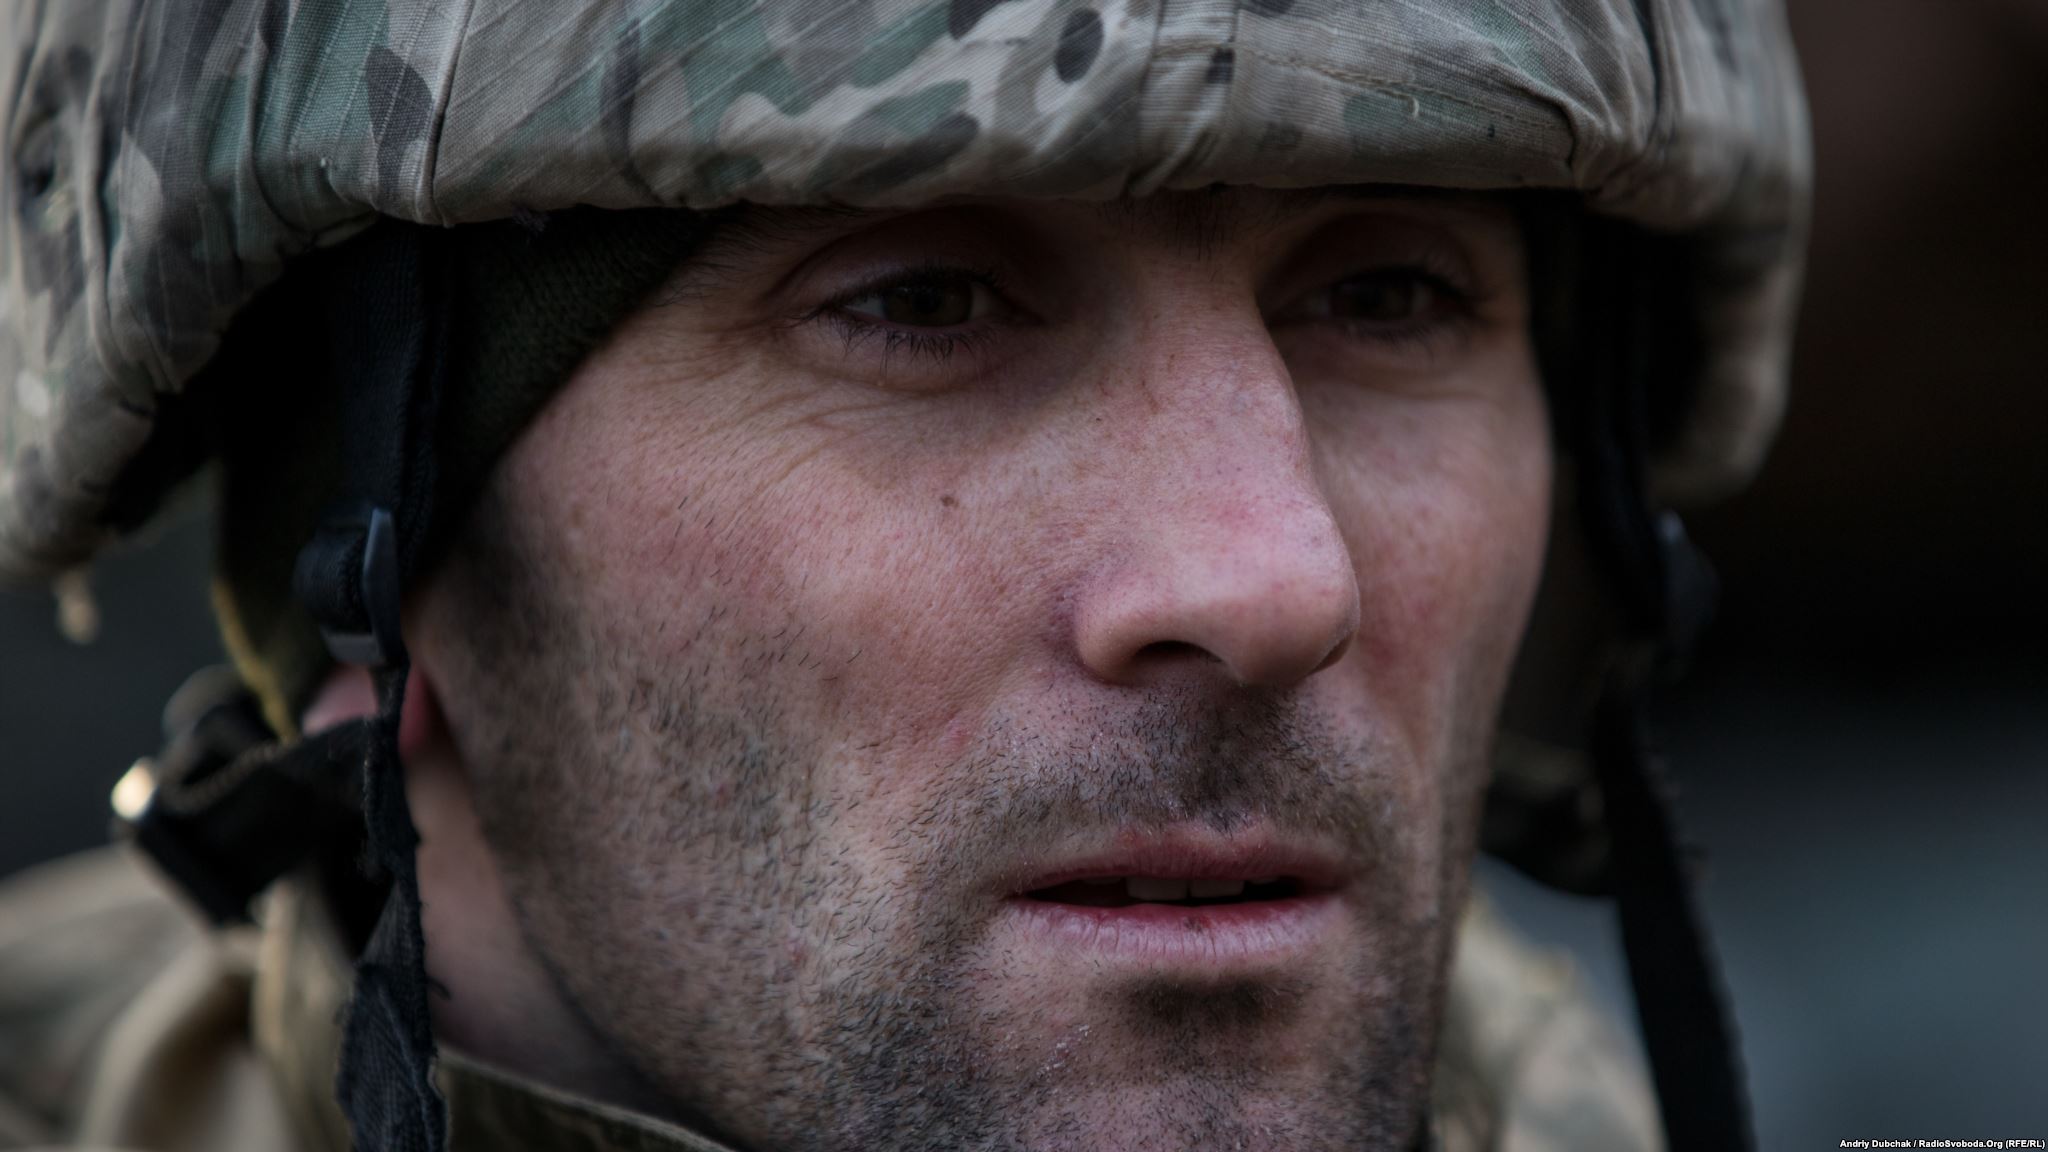 Іван, військовий, який нас скрізь супроводжував на позиціях (фотограф Андрей Дубчак / Andriy Dubchak)